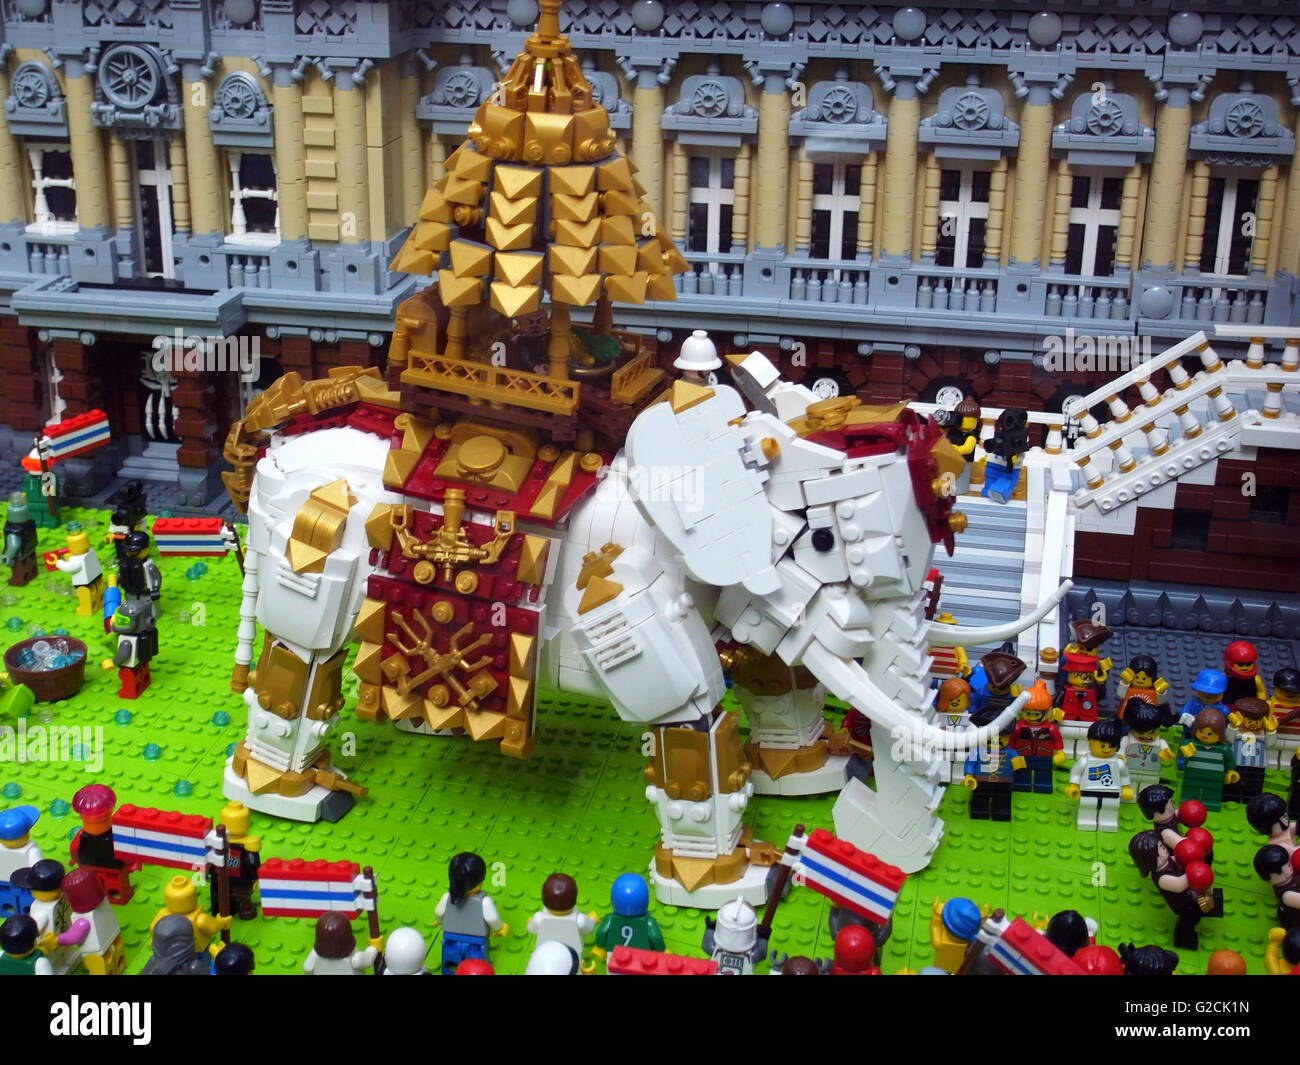 Modello di Lego Thailandia paesaggio tempio edificio tradizionale antica Santa Casa Imperial palace toy divertimento diurno white elephant persone c Foto Stock